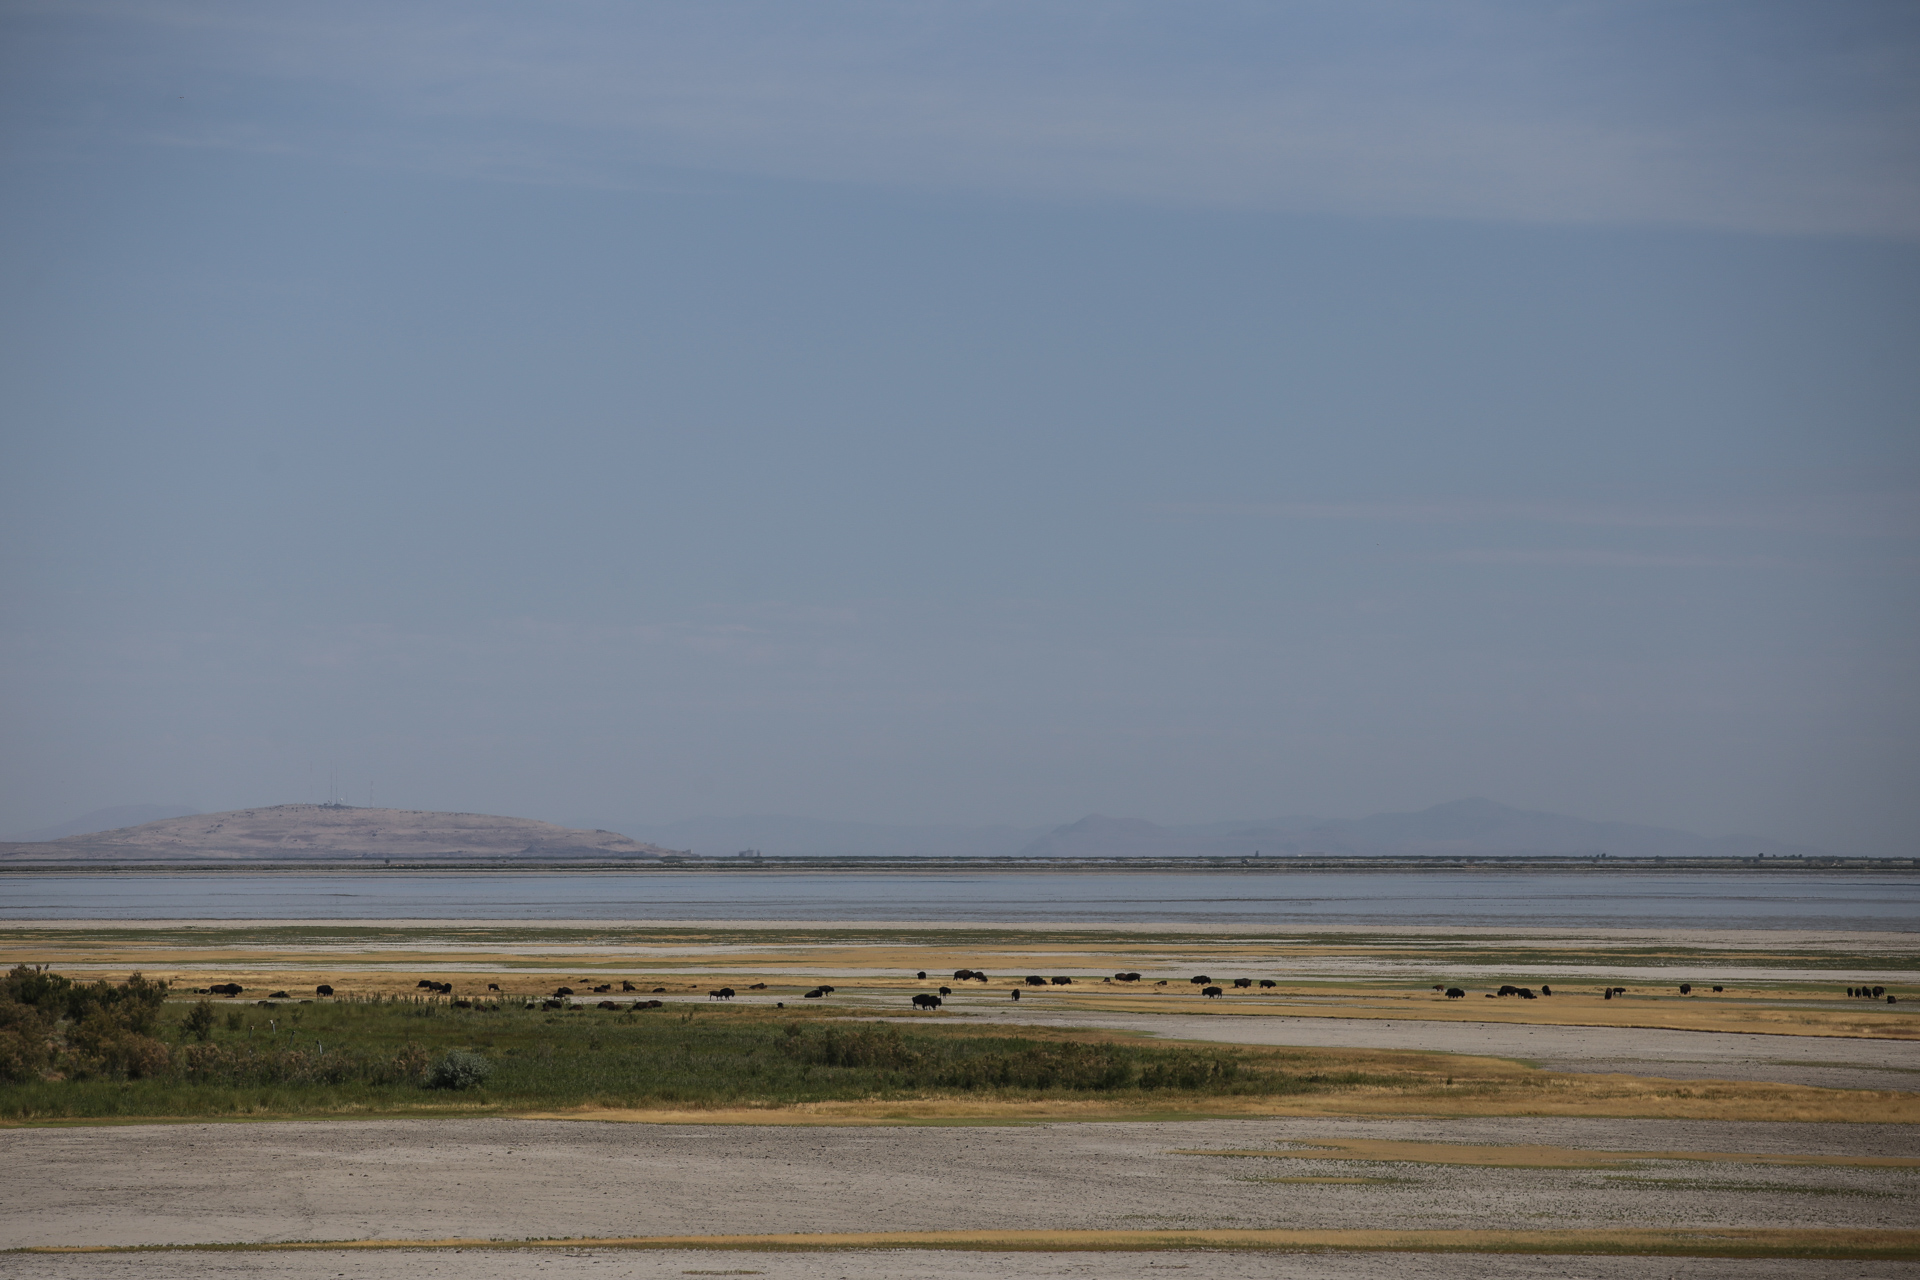 Troupeau de bisons sur l’île de Great Salt Lake